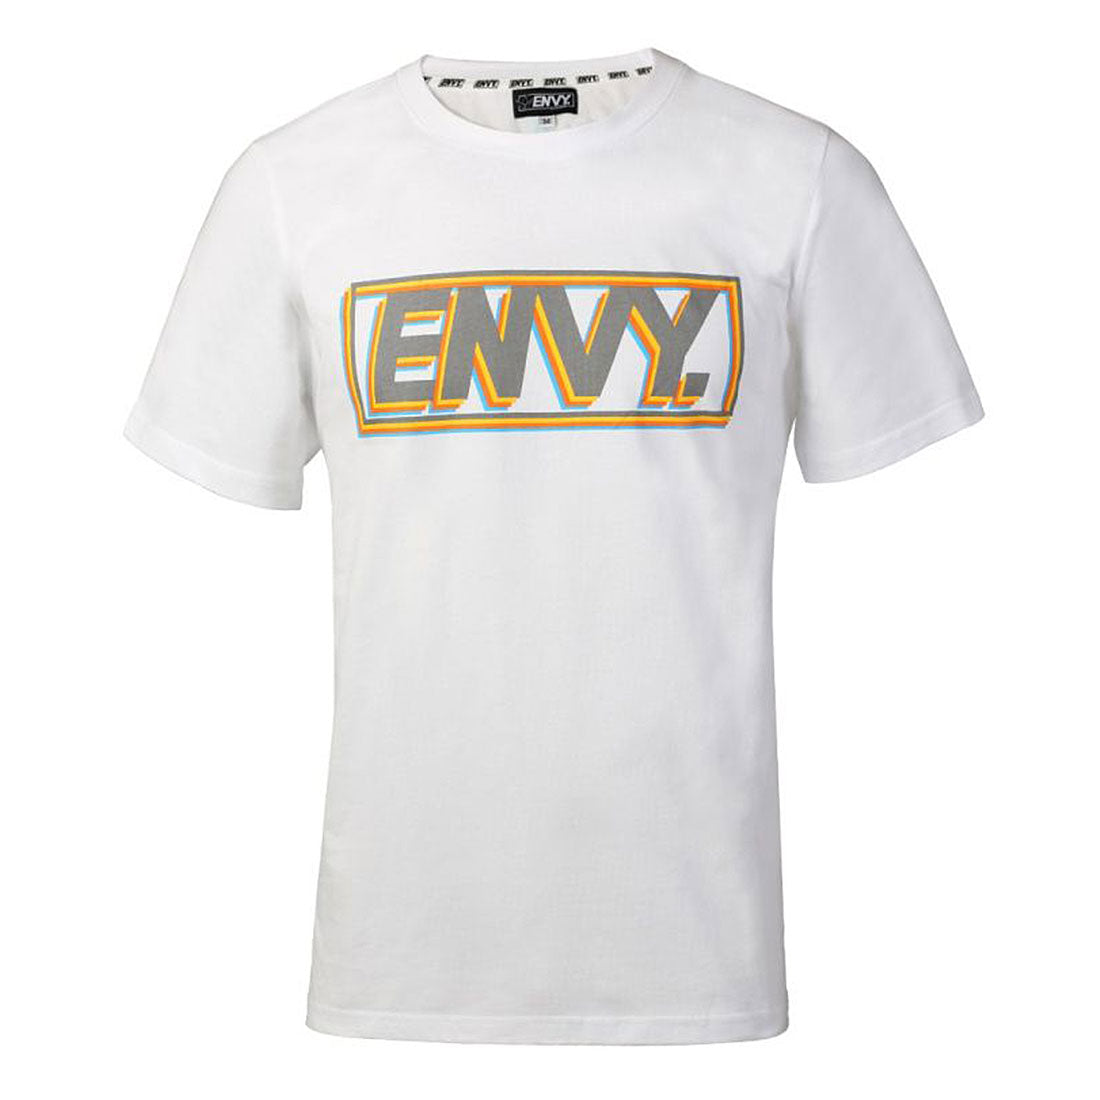 Envy Joy T-Shirt - White Apparel Tshirts